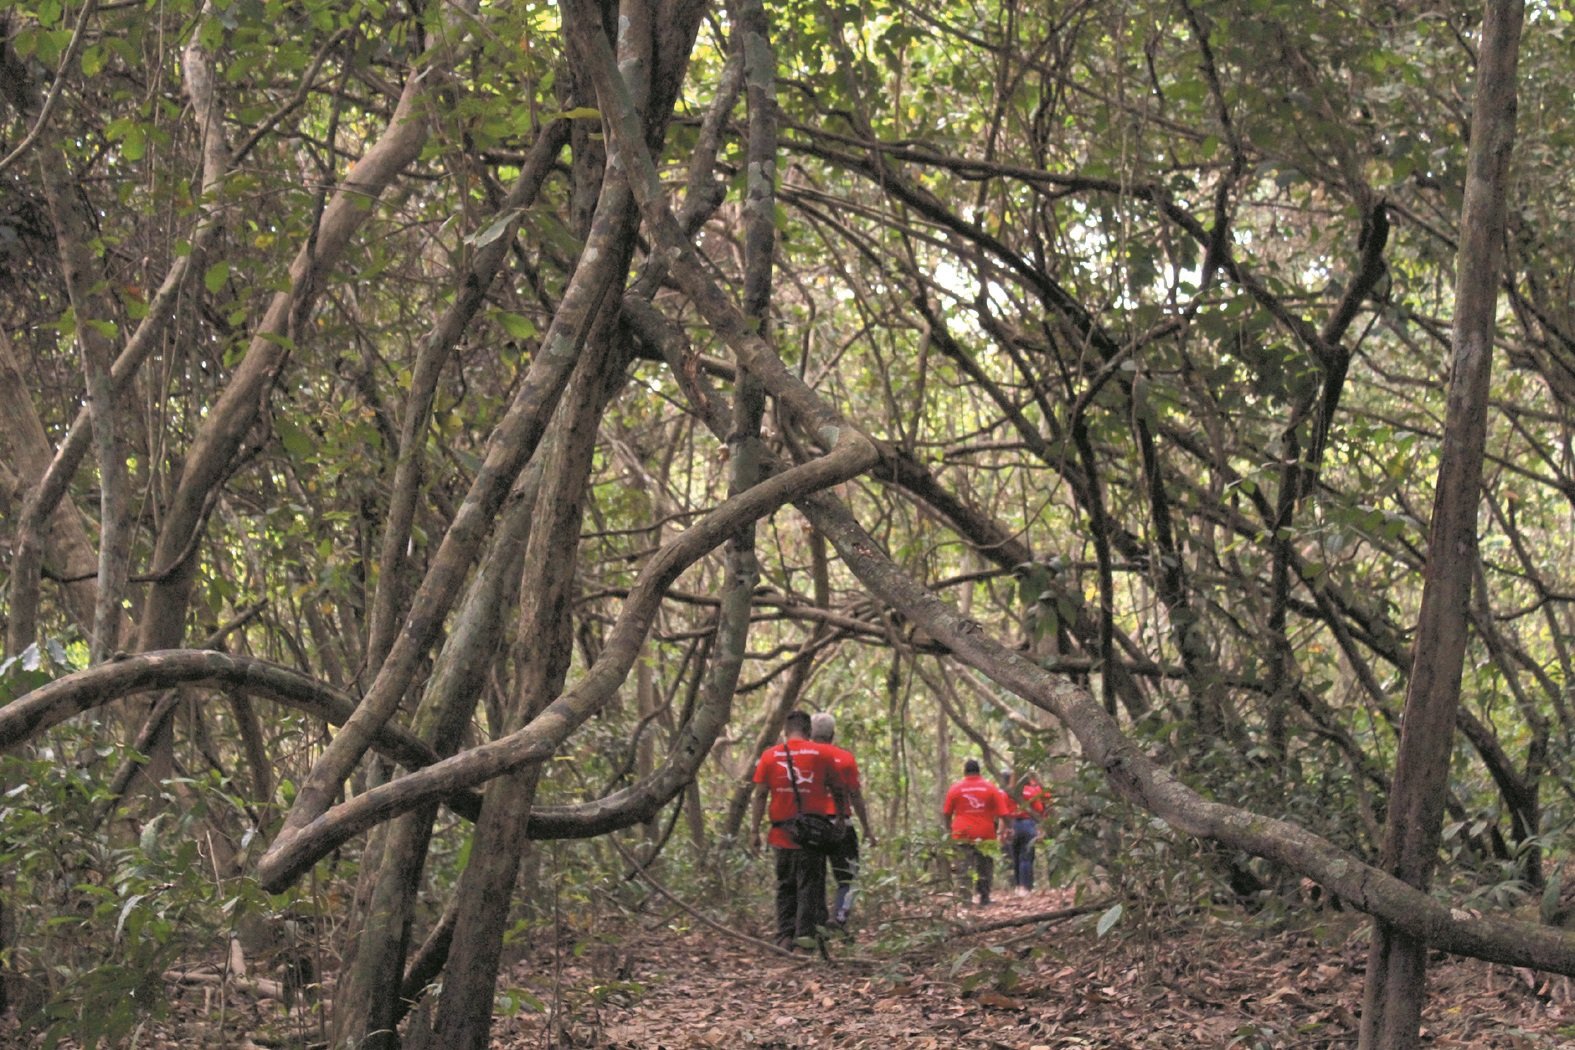 “拉雅母根”的树枝茂盛且奇形怪状，有的宛如蛇身，甚是吓人，但却是吸引不少游客登岛参观的一大卖点之一。